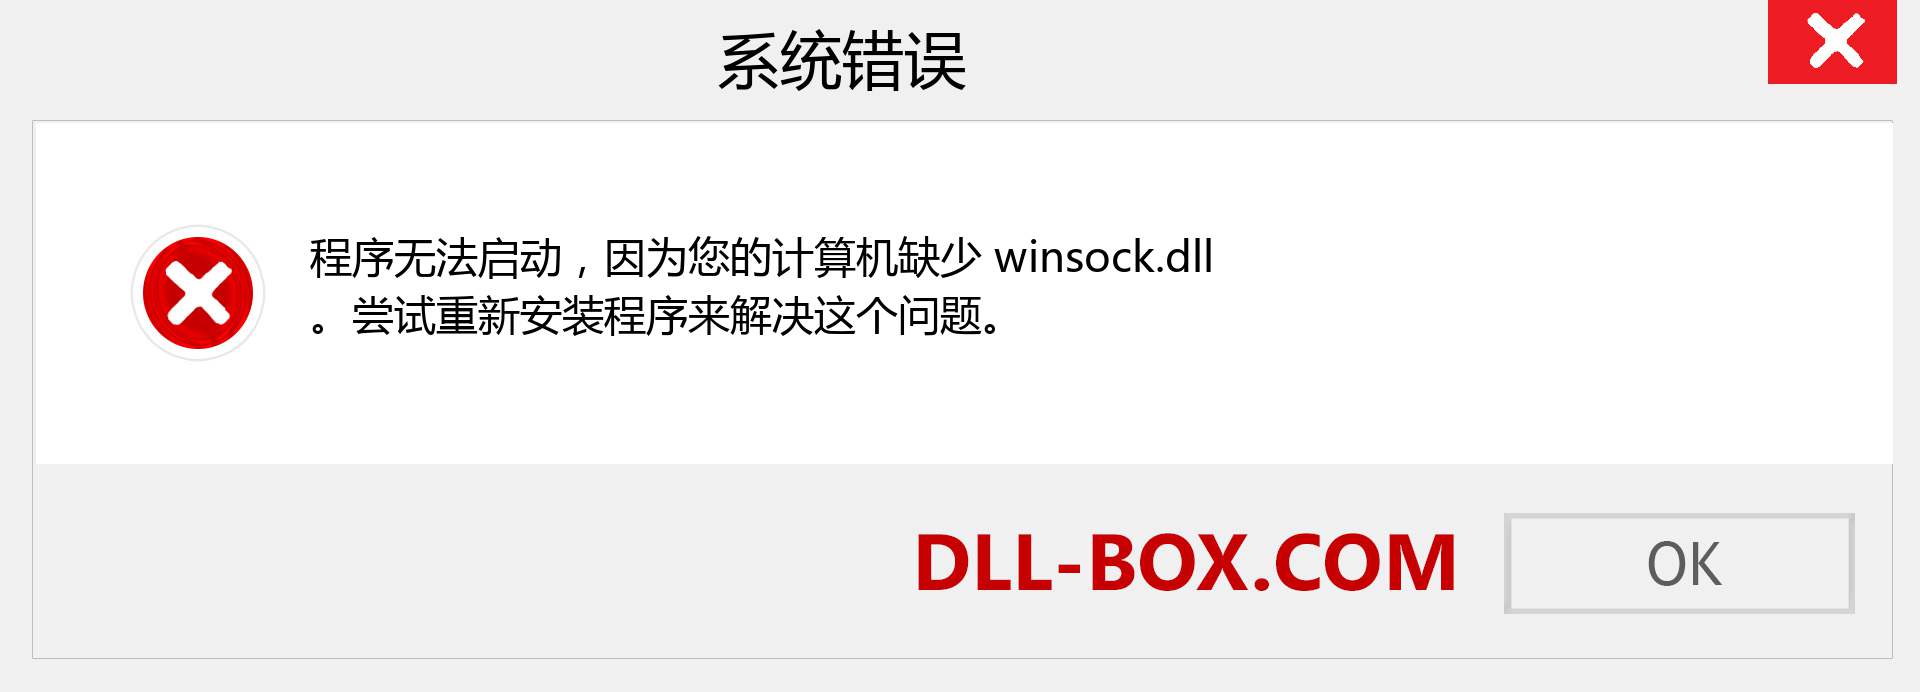 winsock.dll 文件丢失？。 适用于 Windows 7、8、10 的下载 - 修复 Windows、照片、图像上的 winsock dll 丢失错误